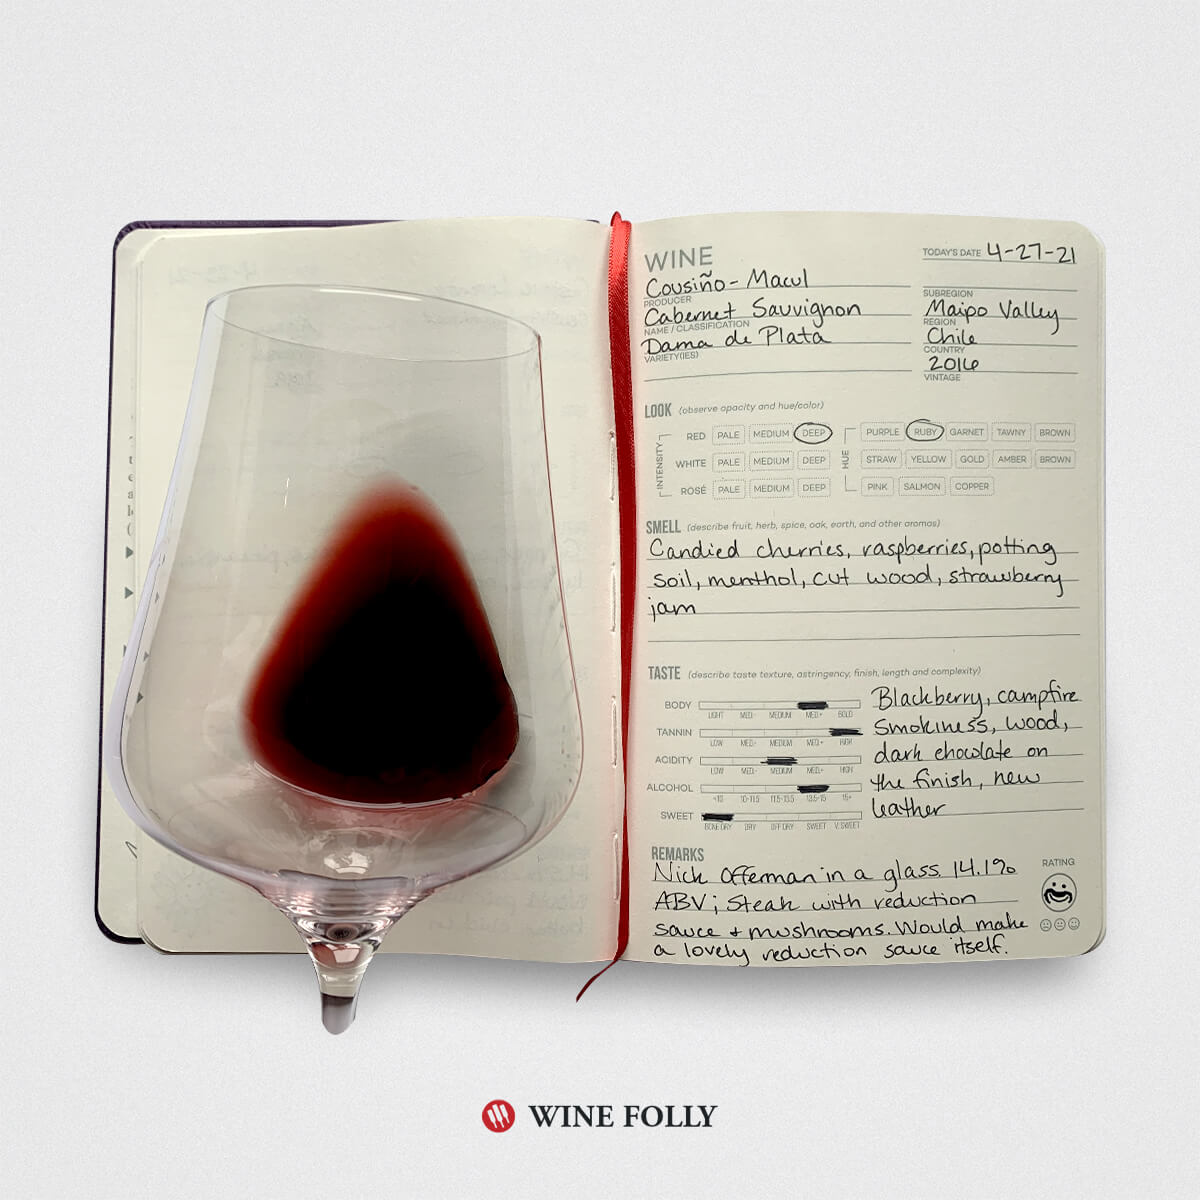 Wine Journal image for Chilean Cabernet Sauvignon